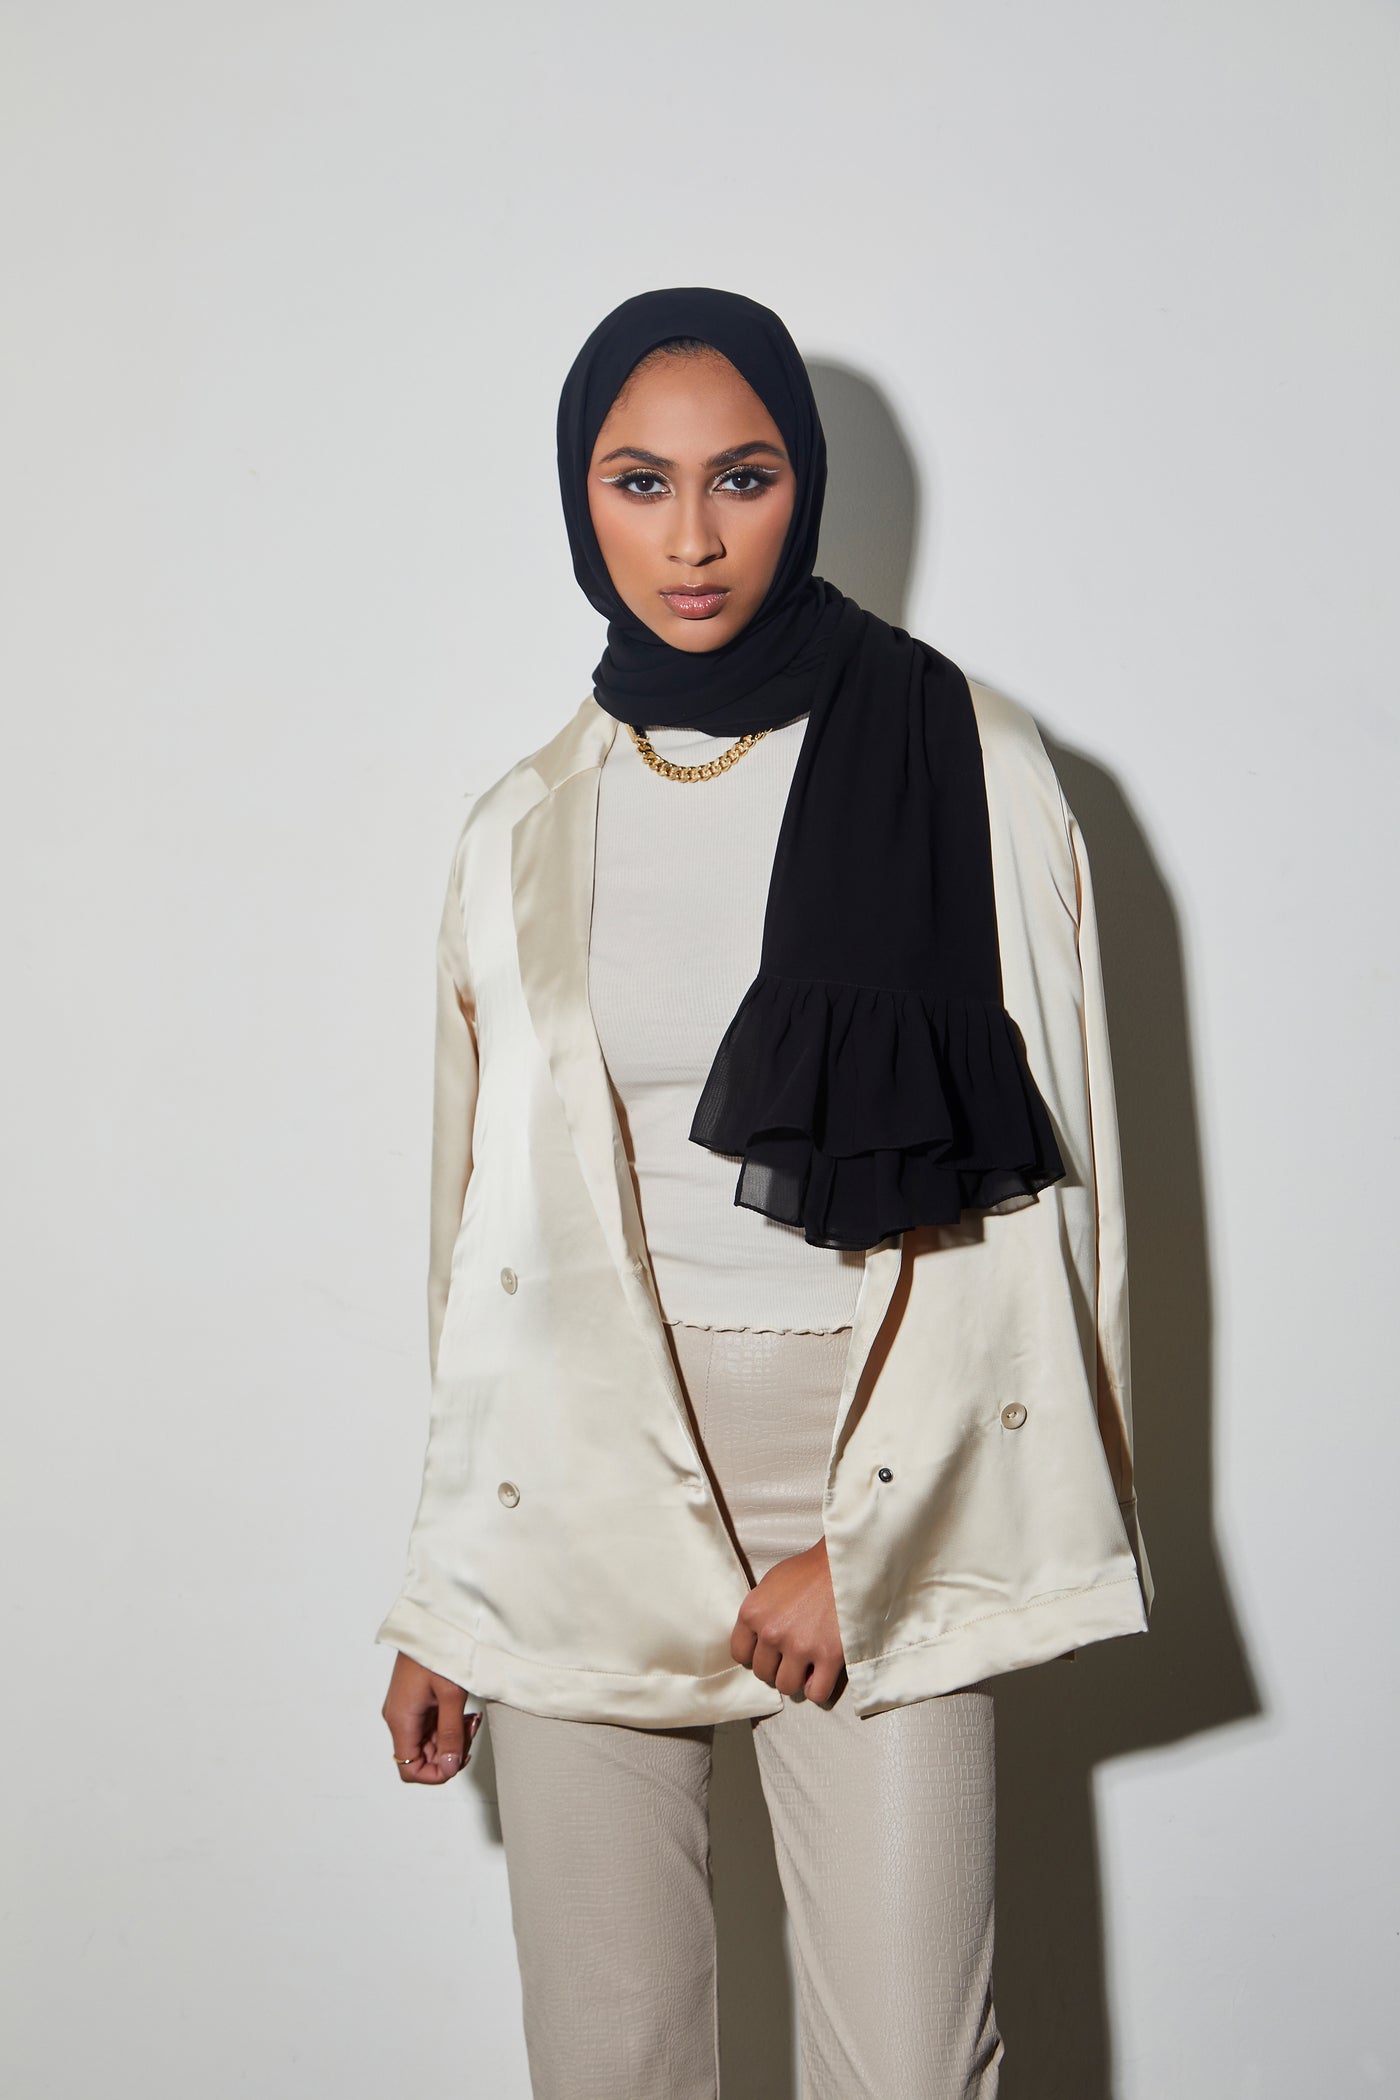 Premium Quality Ruffle Hijab